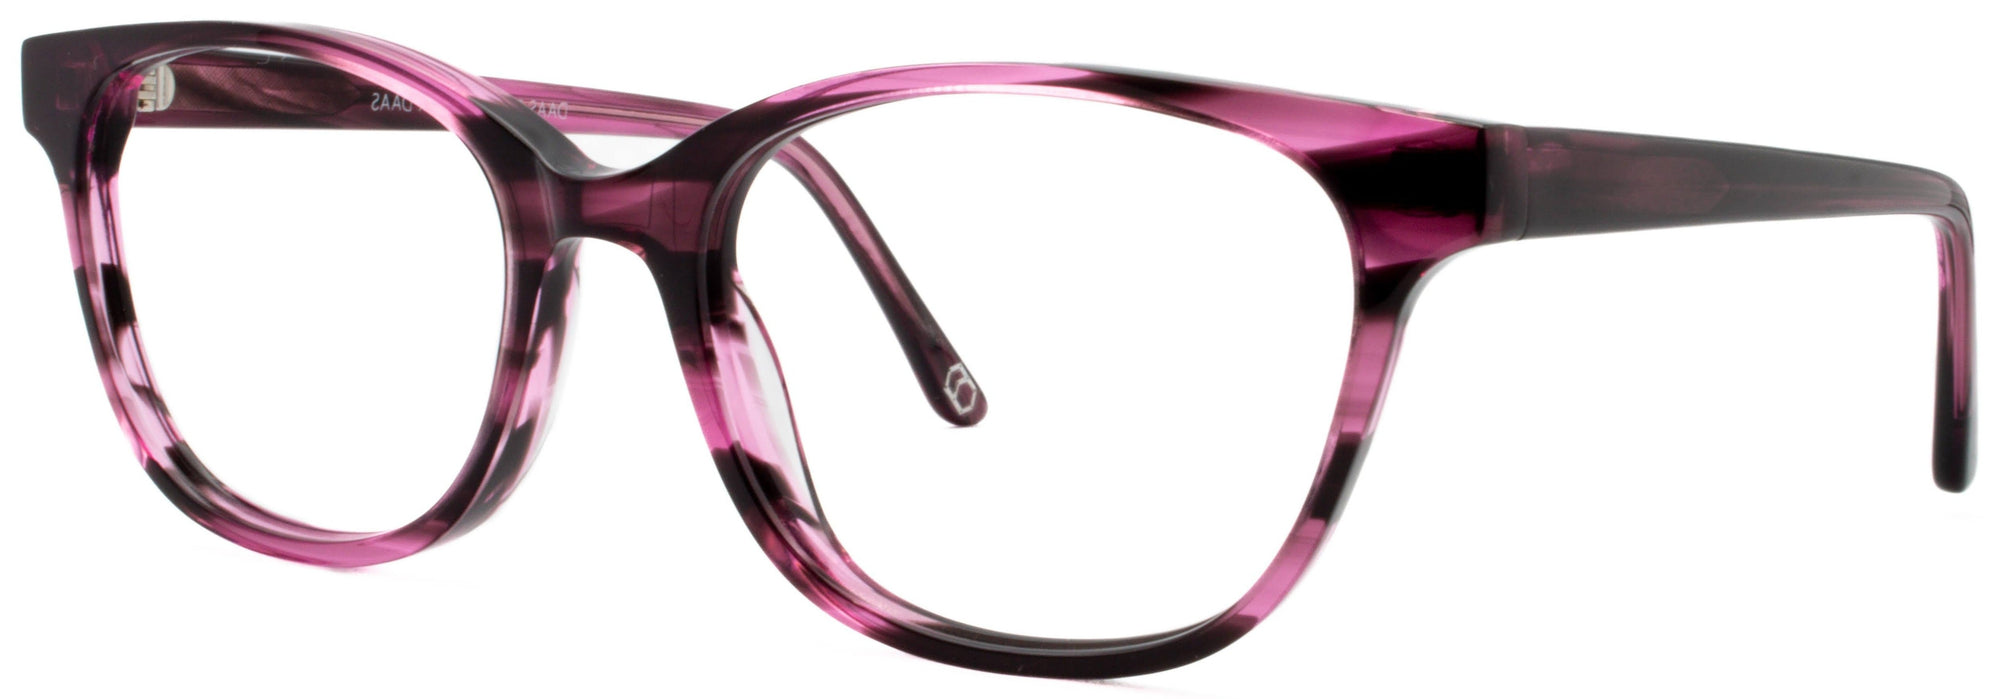 Alexander Daas - Chloe Eyeglasses - Demi Purple - Side View